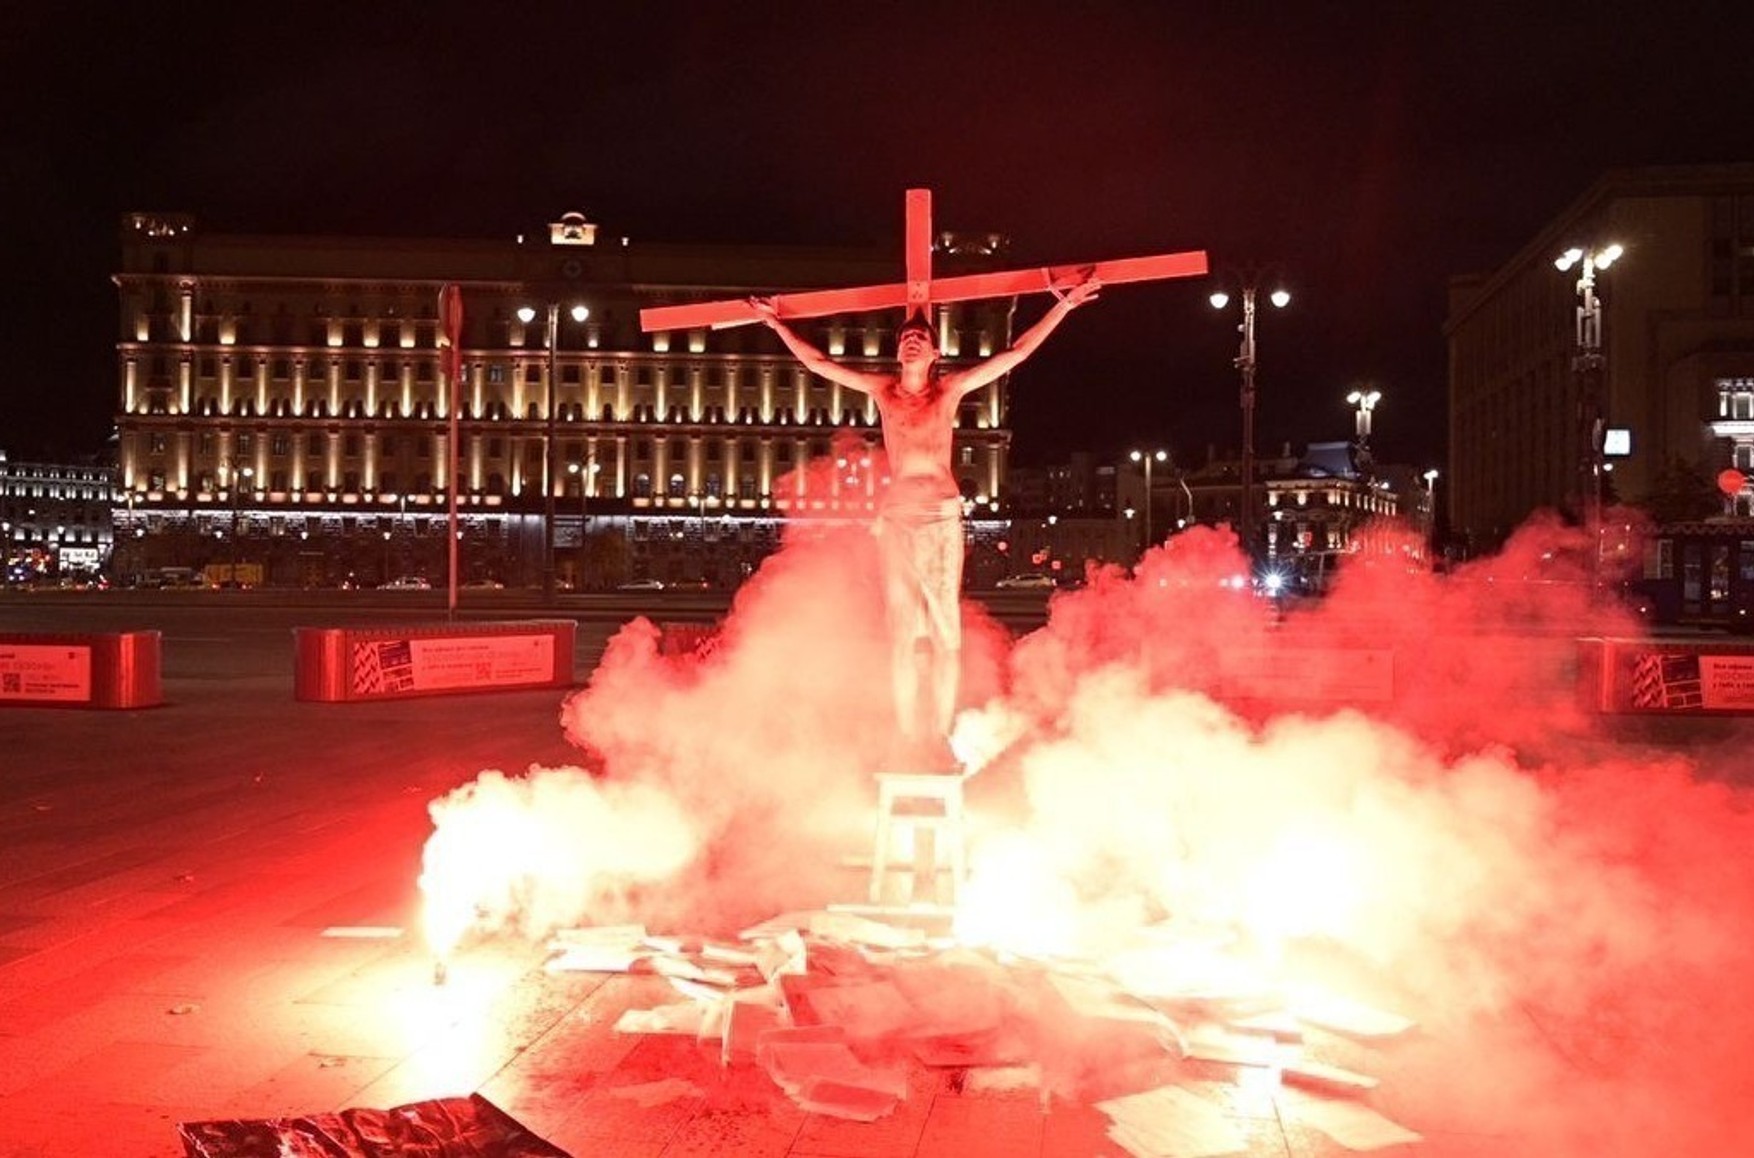 Акціоніста Павла Крисевича, «підпаливши» себе в образі Христа біля головної будівлі ФСБ, відрахували з РУДН